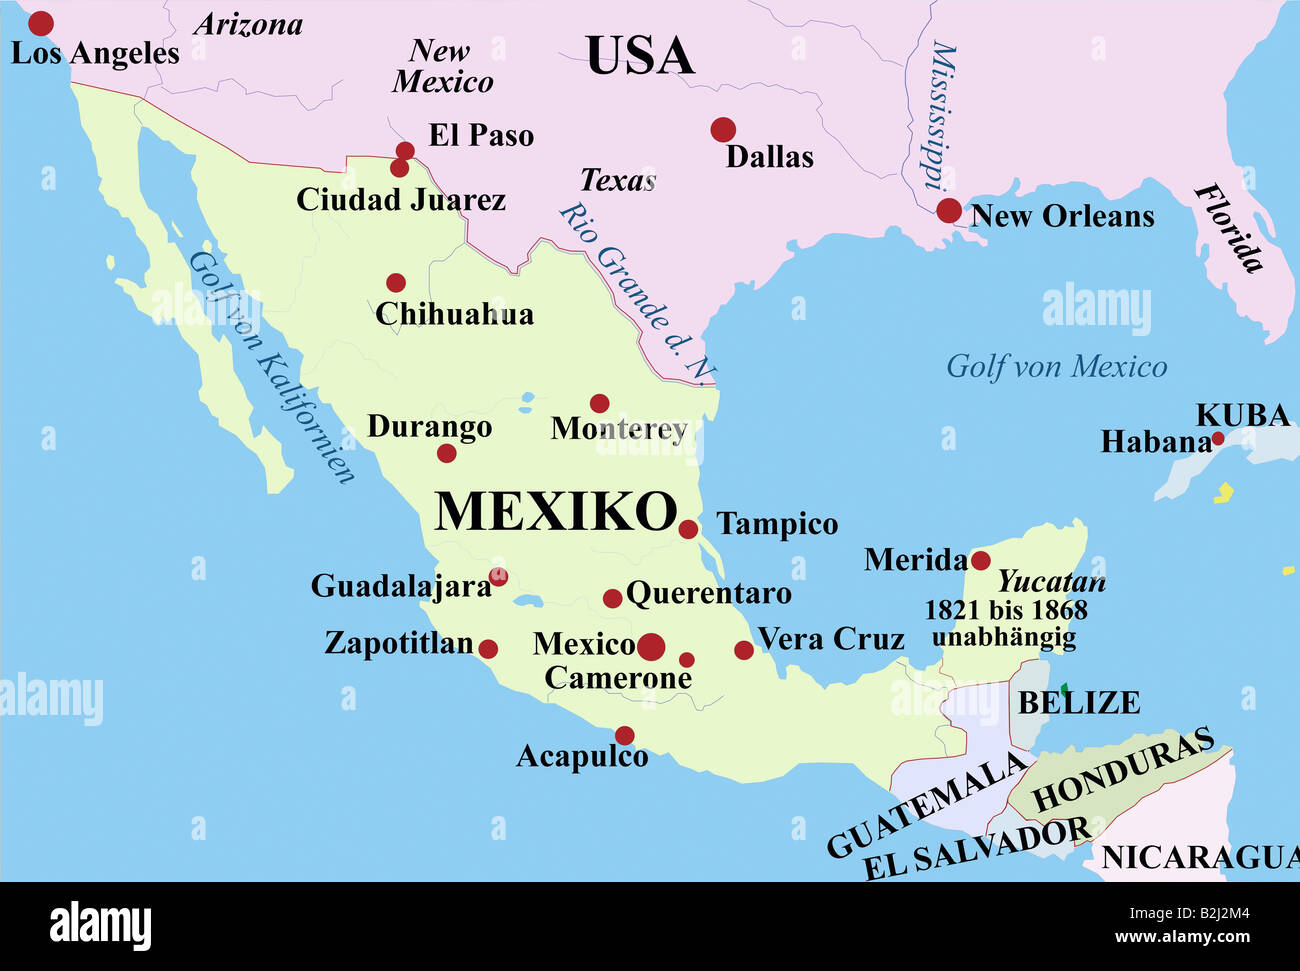 Mahahual mexico map